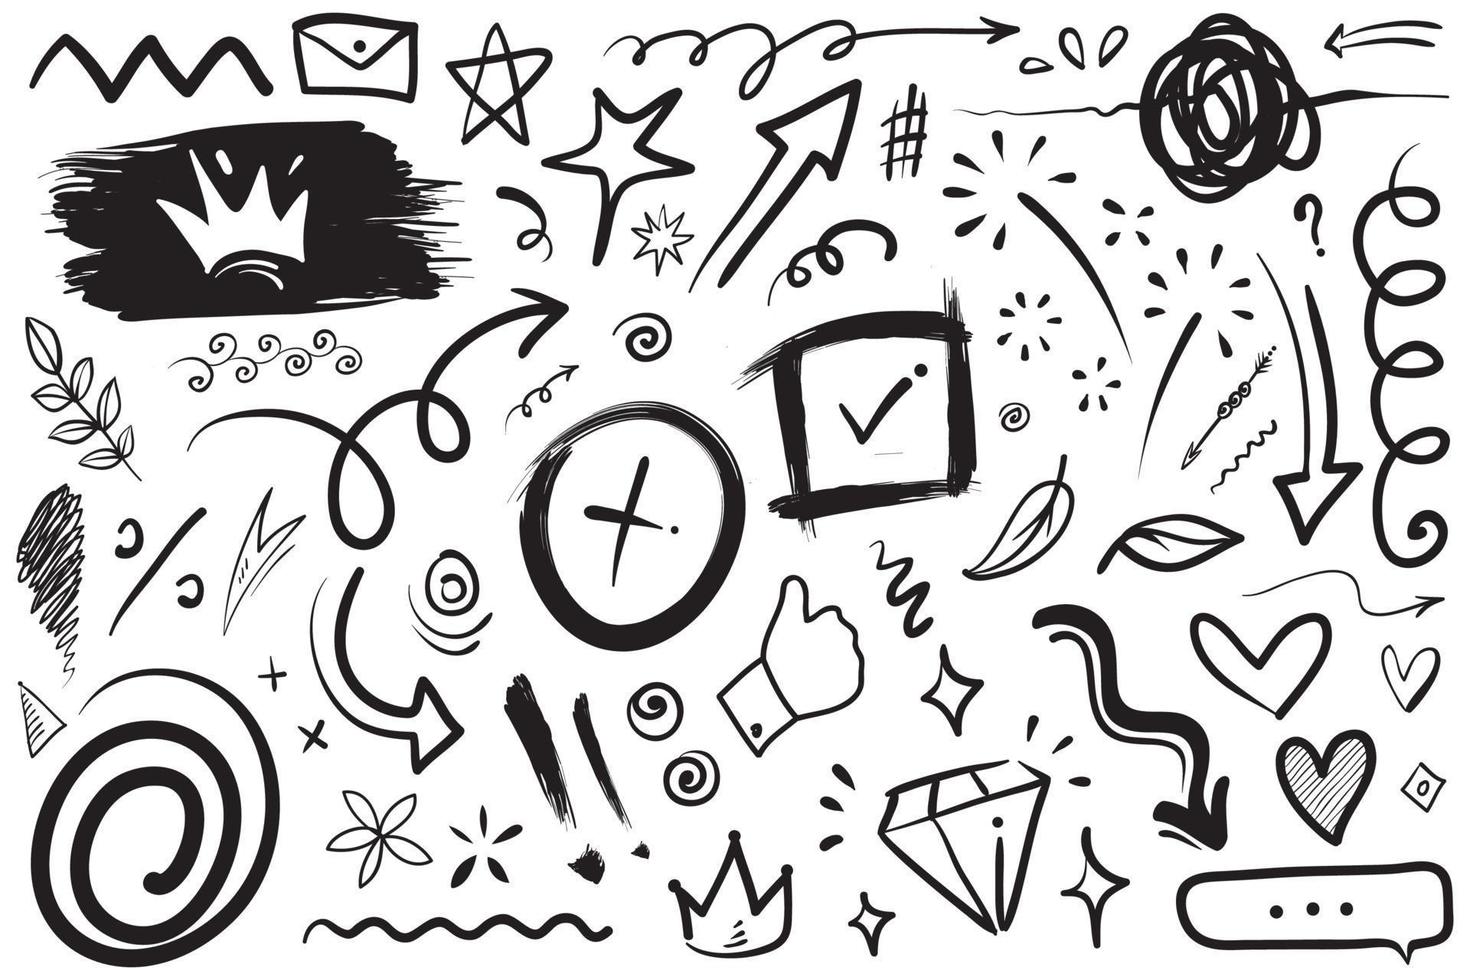 elementi di set disegnati a mano, frecce astratte, nastri, cuori, stelle, corone e altri elementi in uno stile disegnato a mano per i concept design. illustrazione di scarabocchi. illustrazione vettoriale. vettore